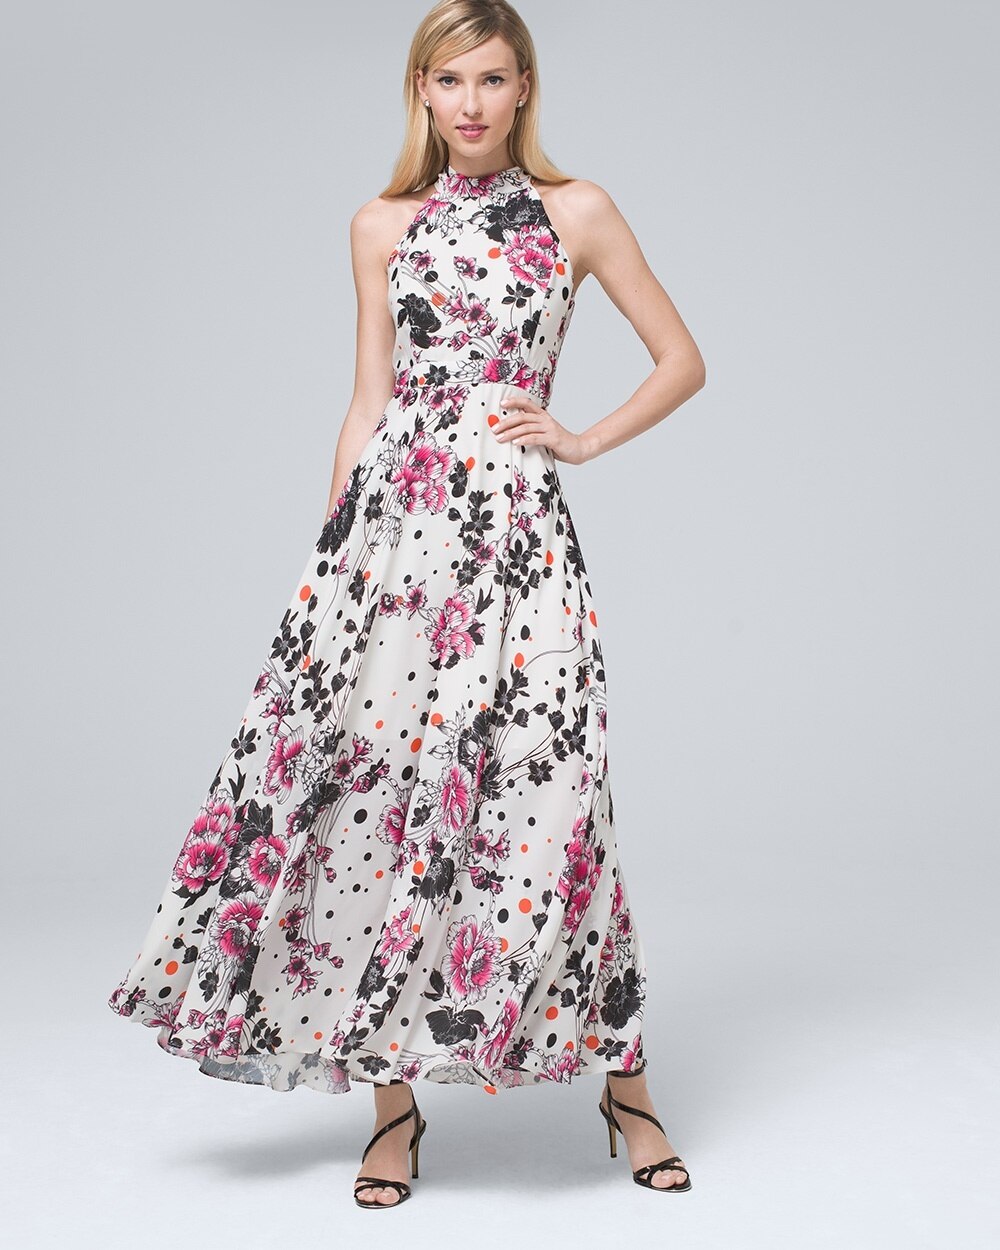 nicole miller floral dress